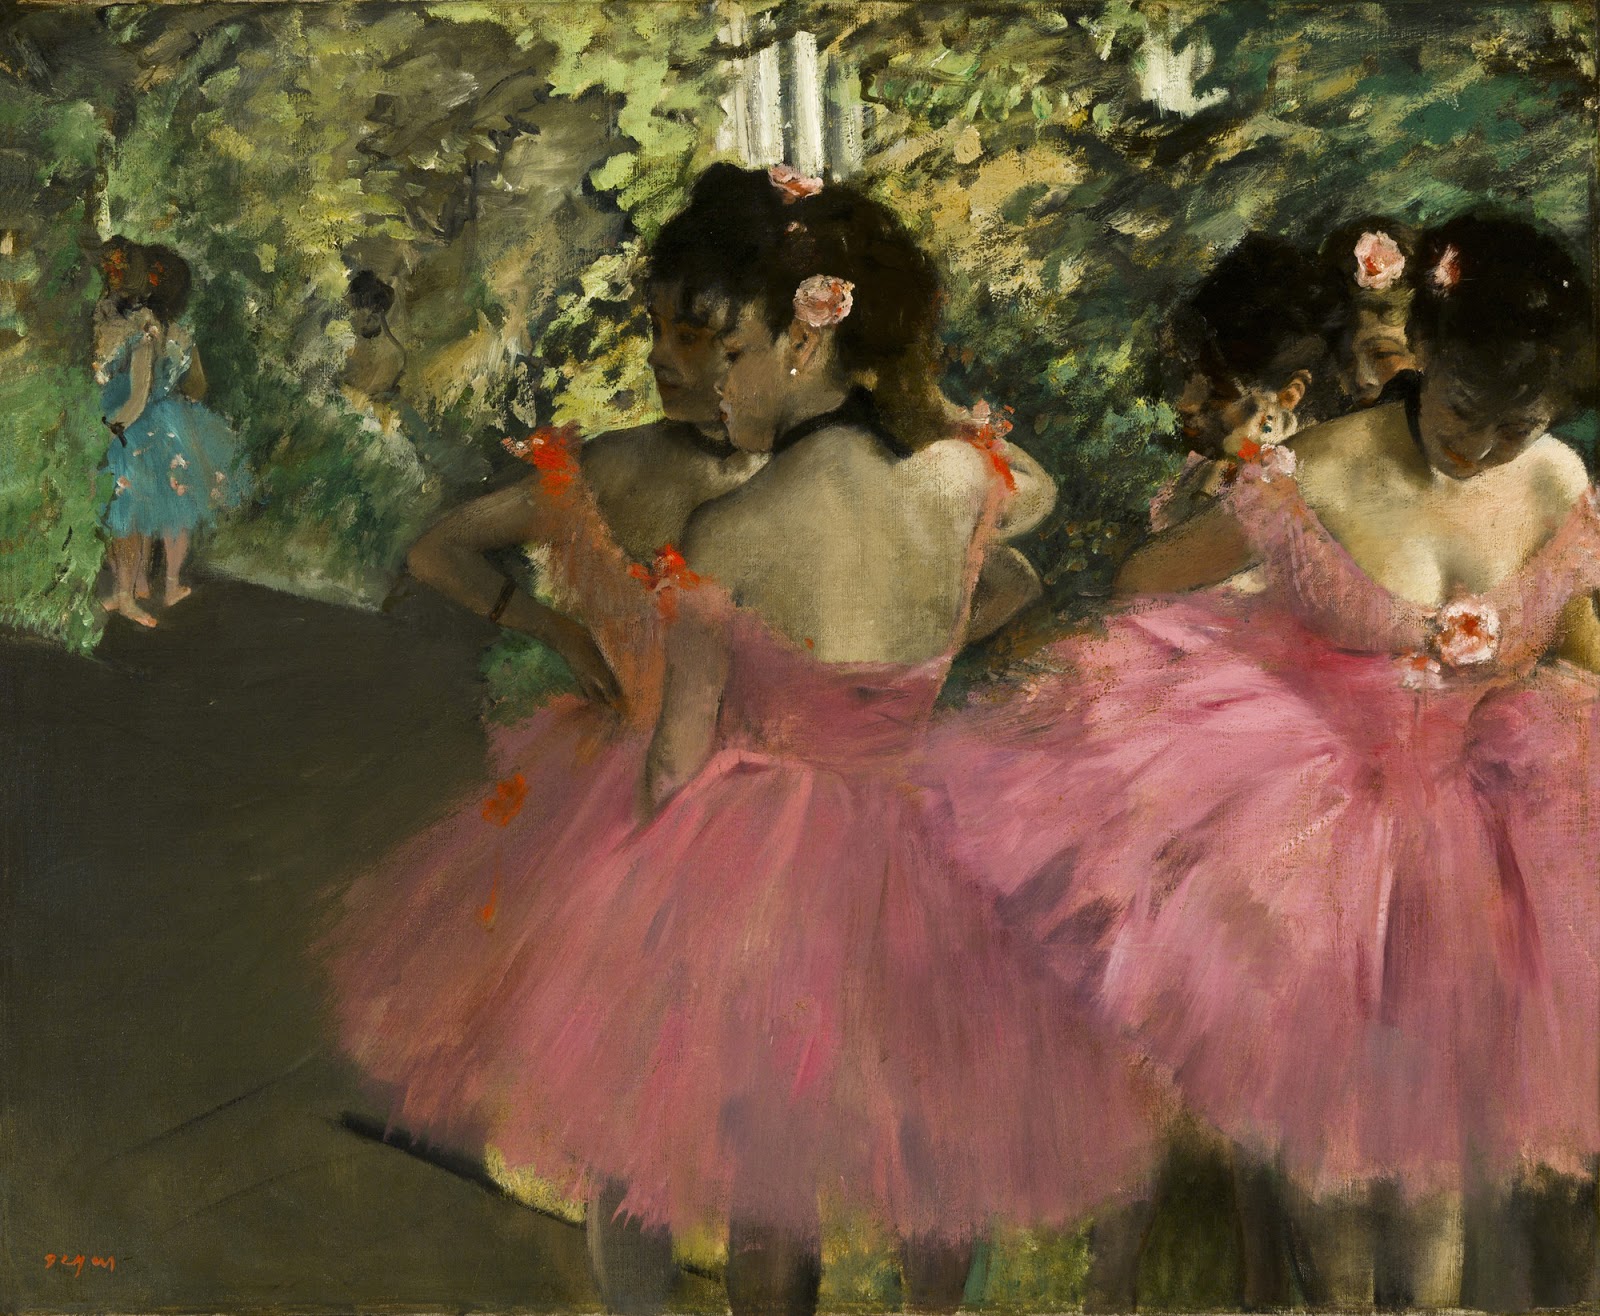 Edgar+Degas-1834-1917 (853).jpg